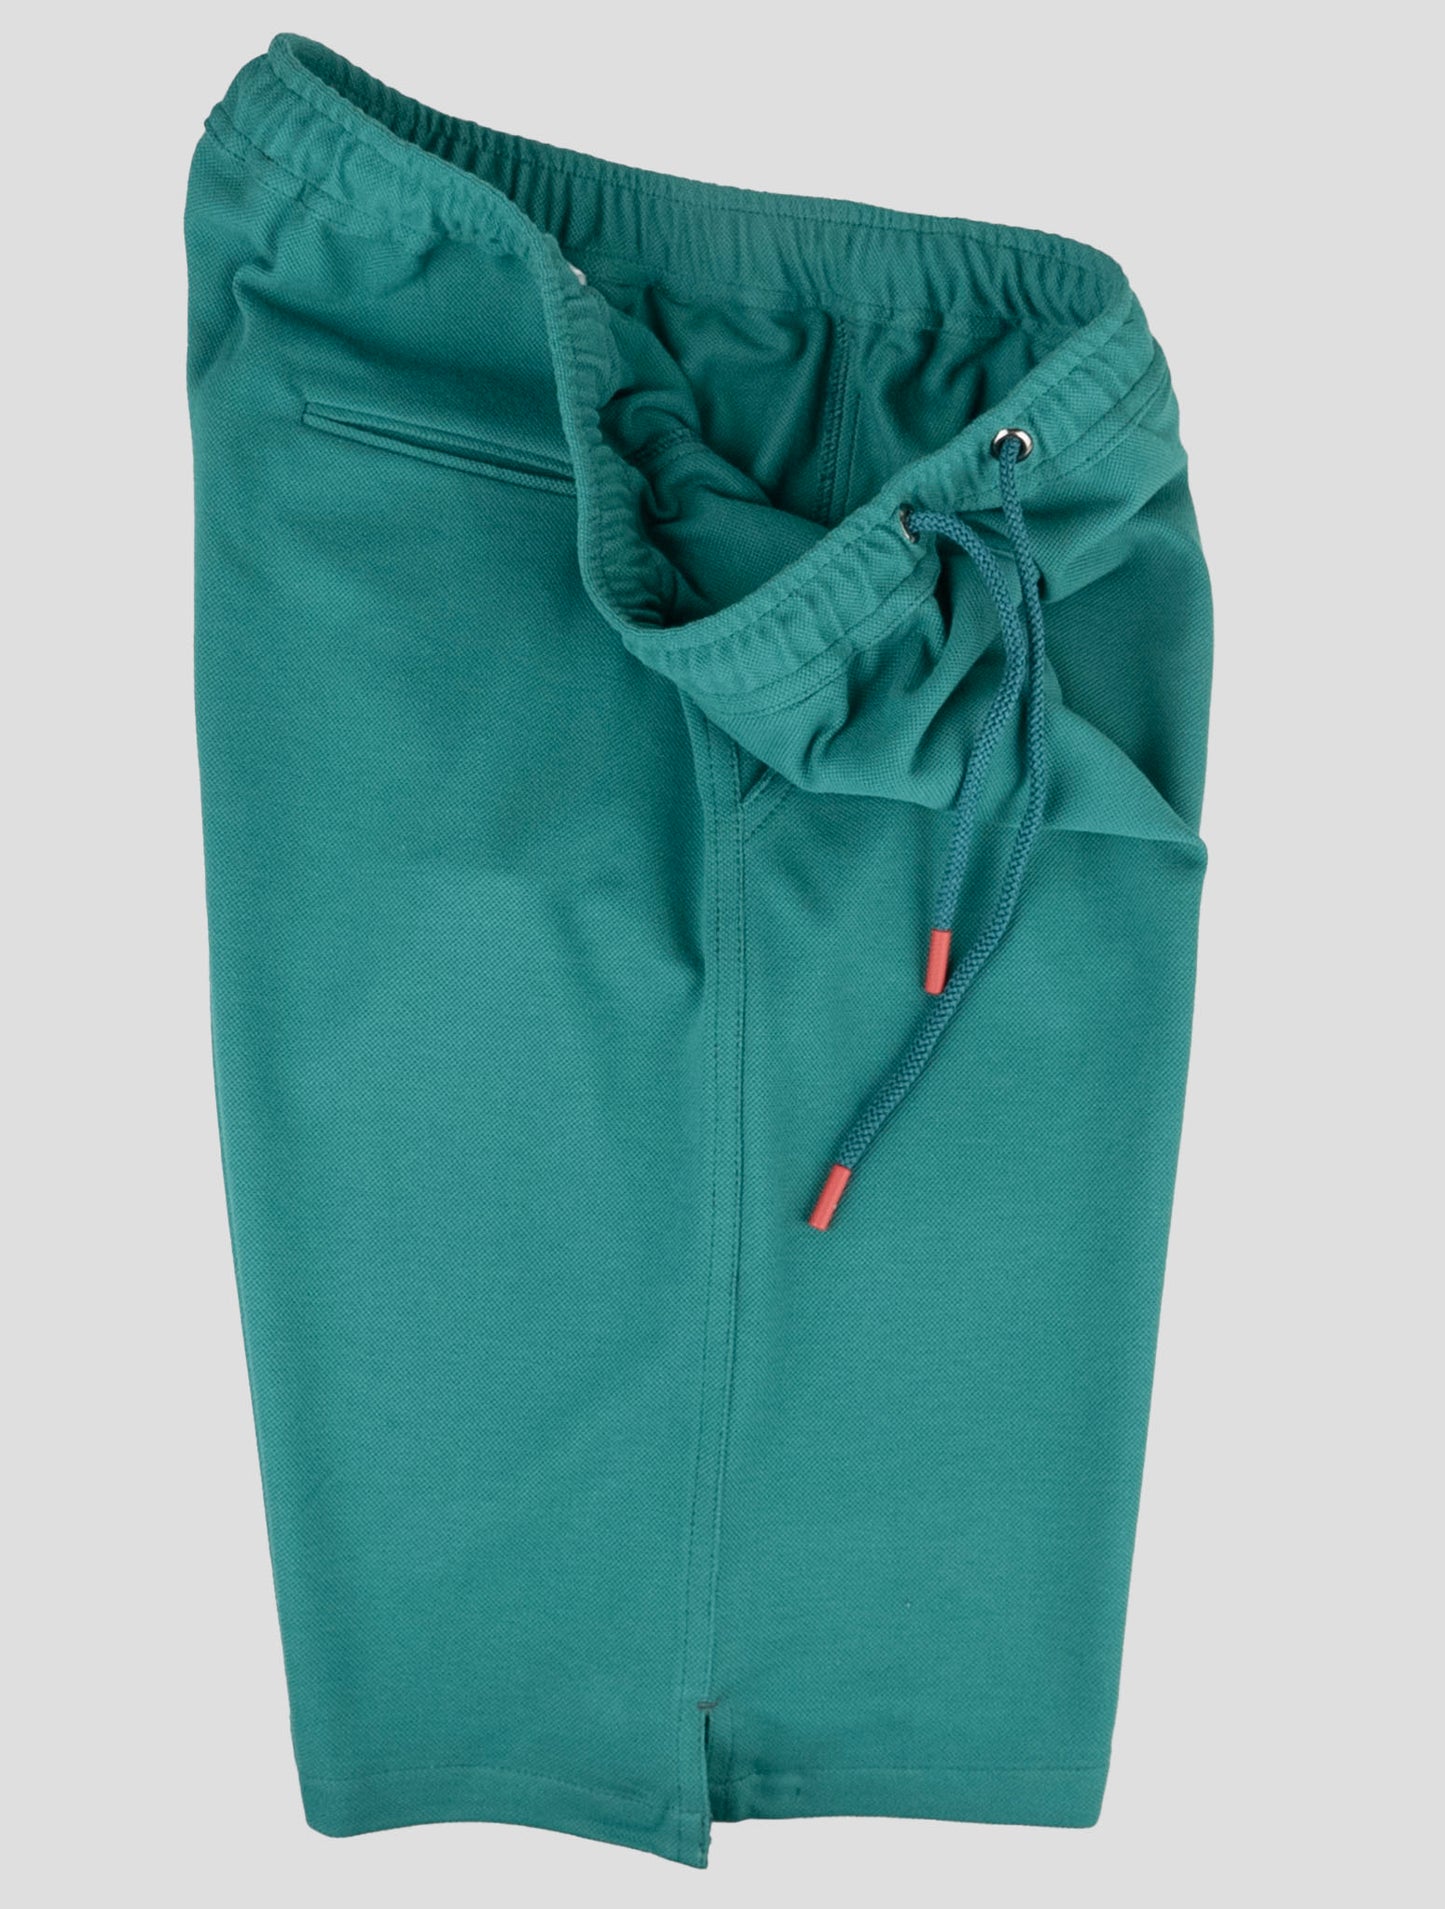 Kiton matchende outfit - grå Mariano og grønne korte bukser træningsdragt